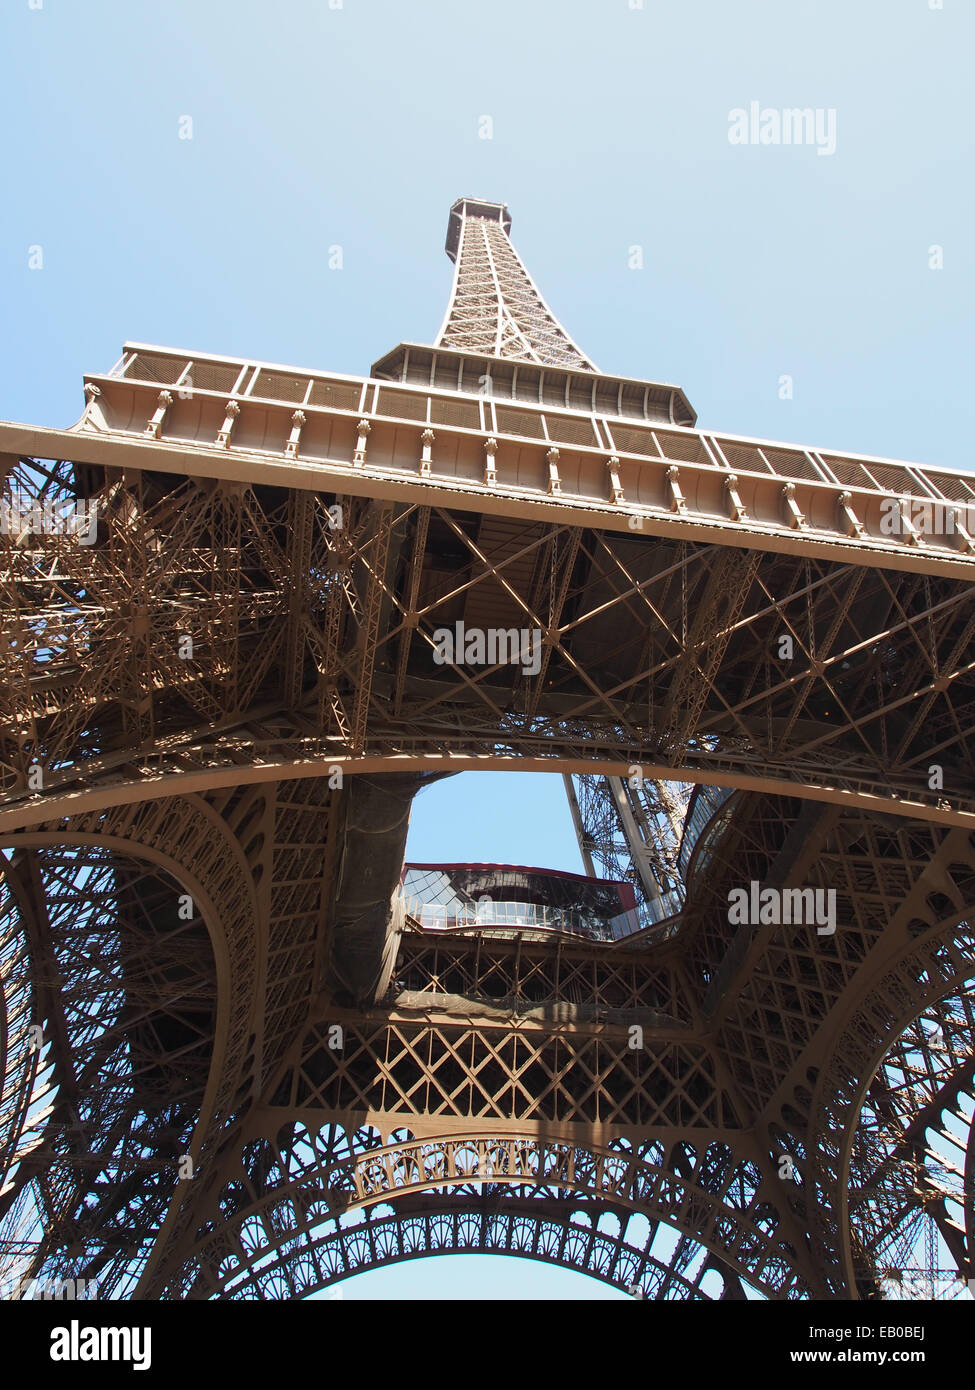 Eiffel tower, Paris, portrait, travel, tourism, romance, architecture Stock Photo